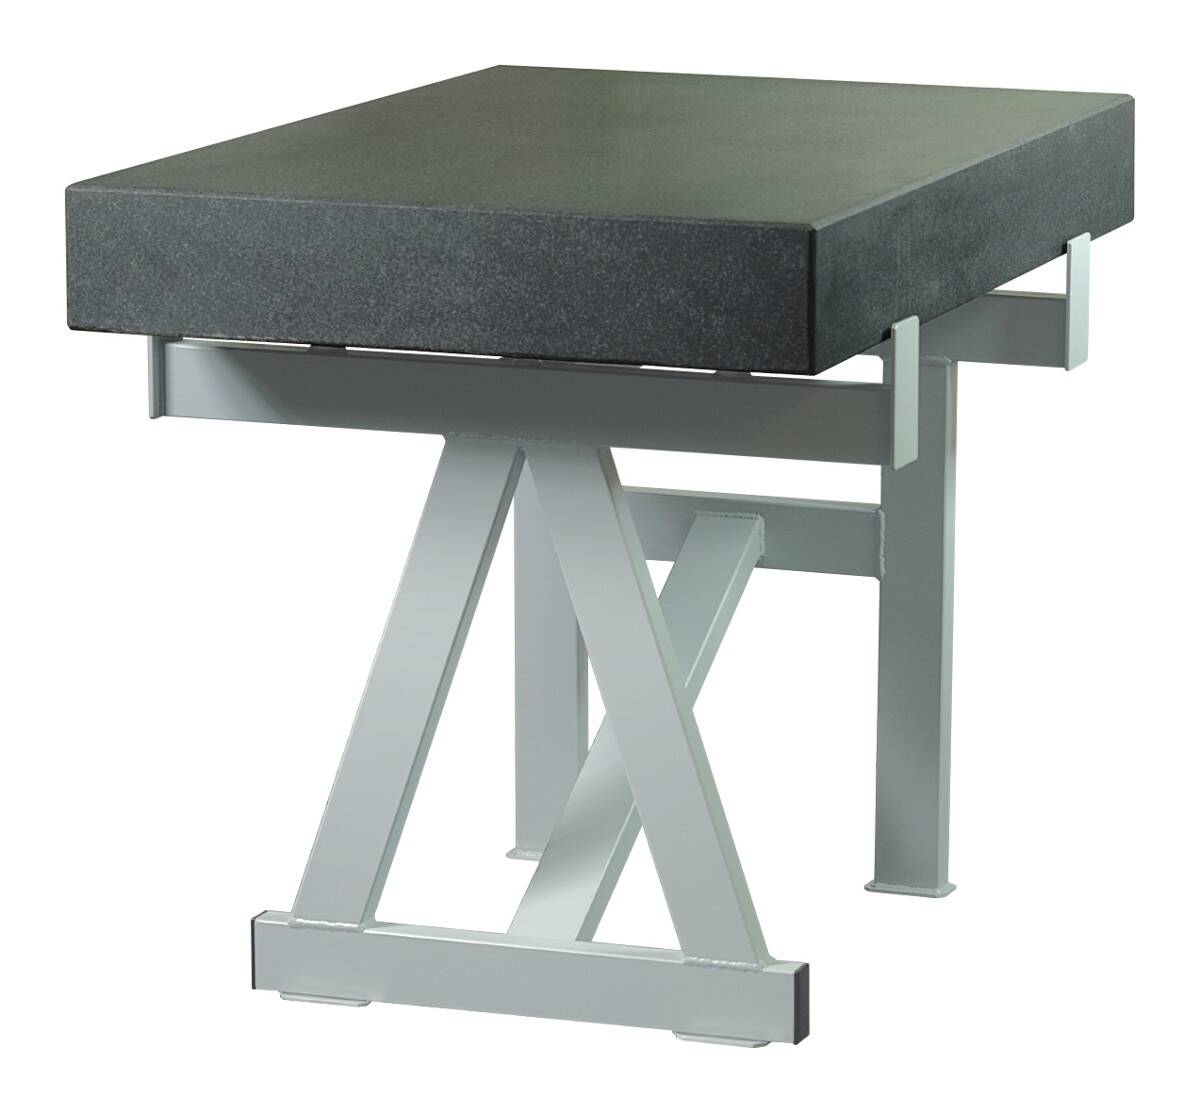 SCHUT stół do płyty pomiarowej 1000x630x100mm 131.018